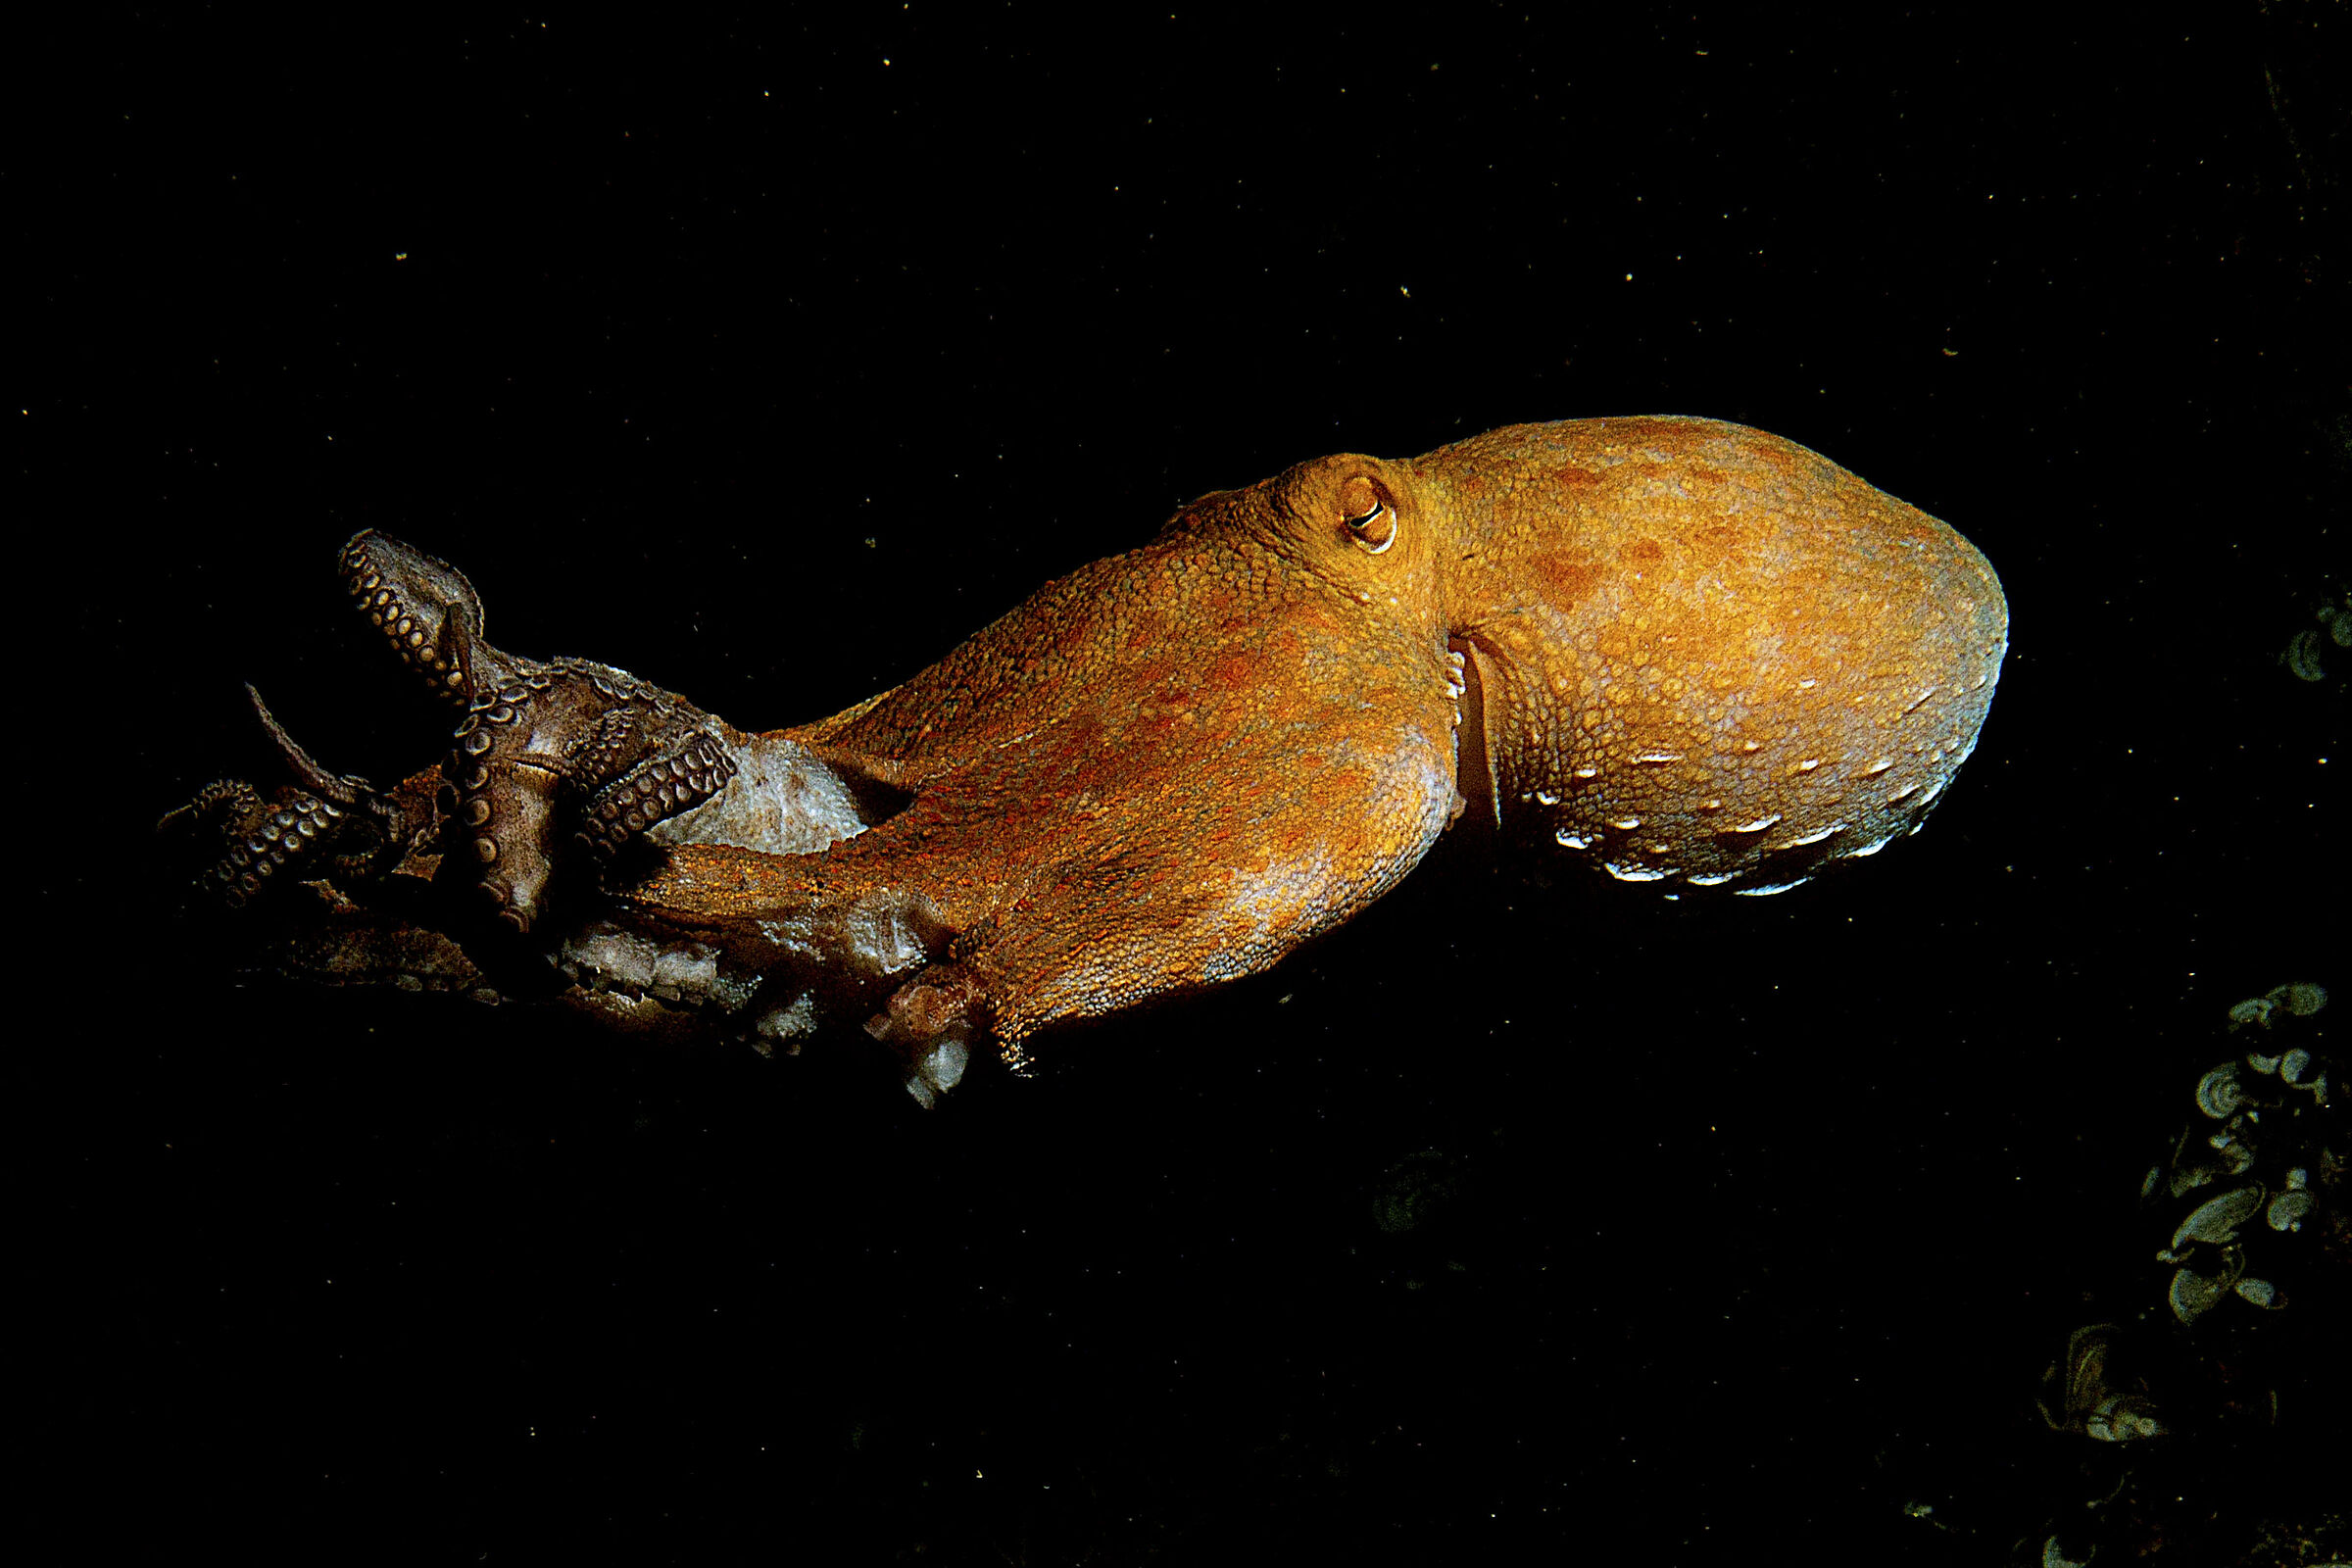 Octopus at night...